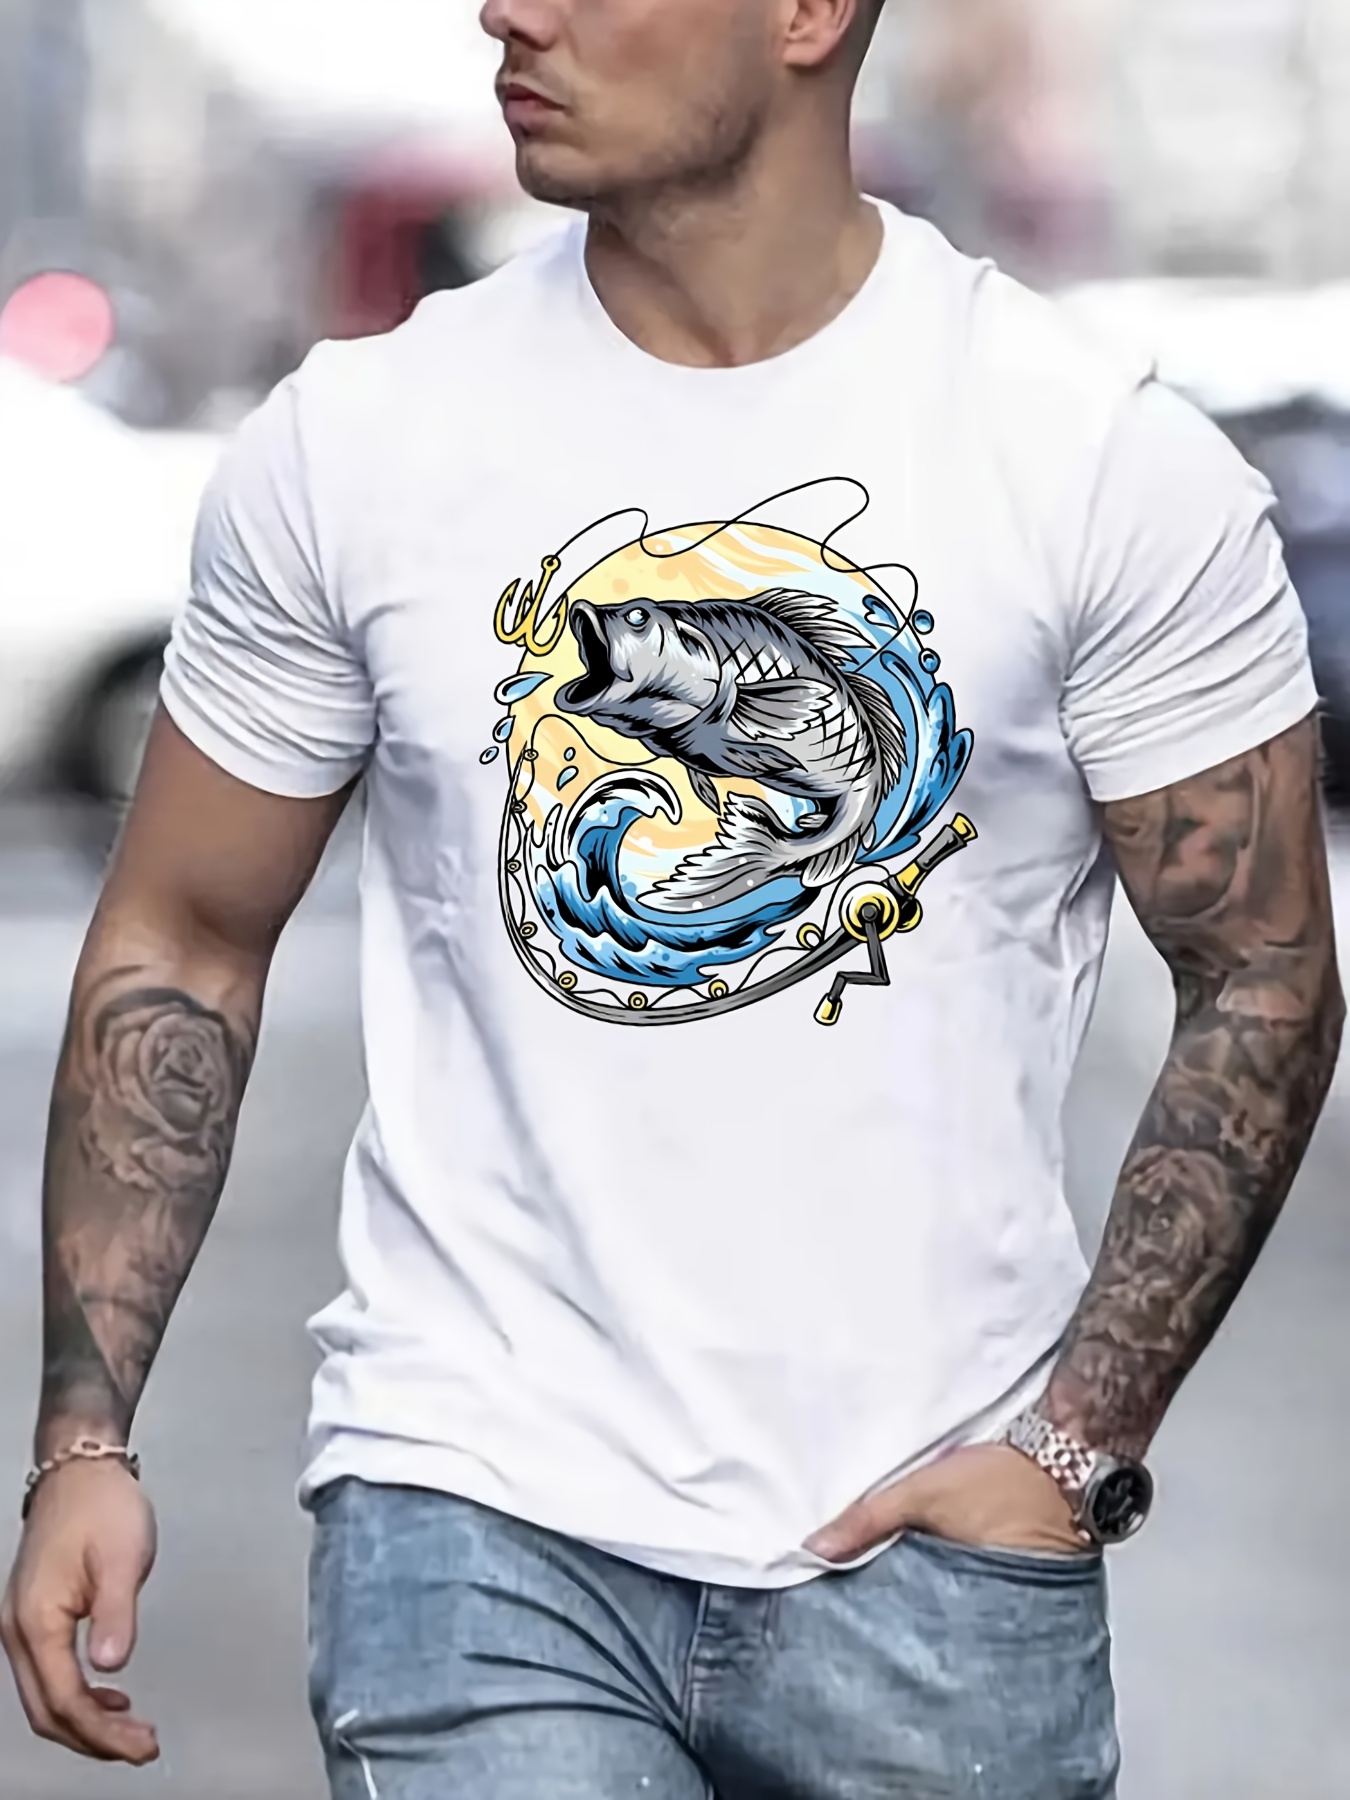 Fishing Shirts For Men - Temu